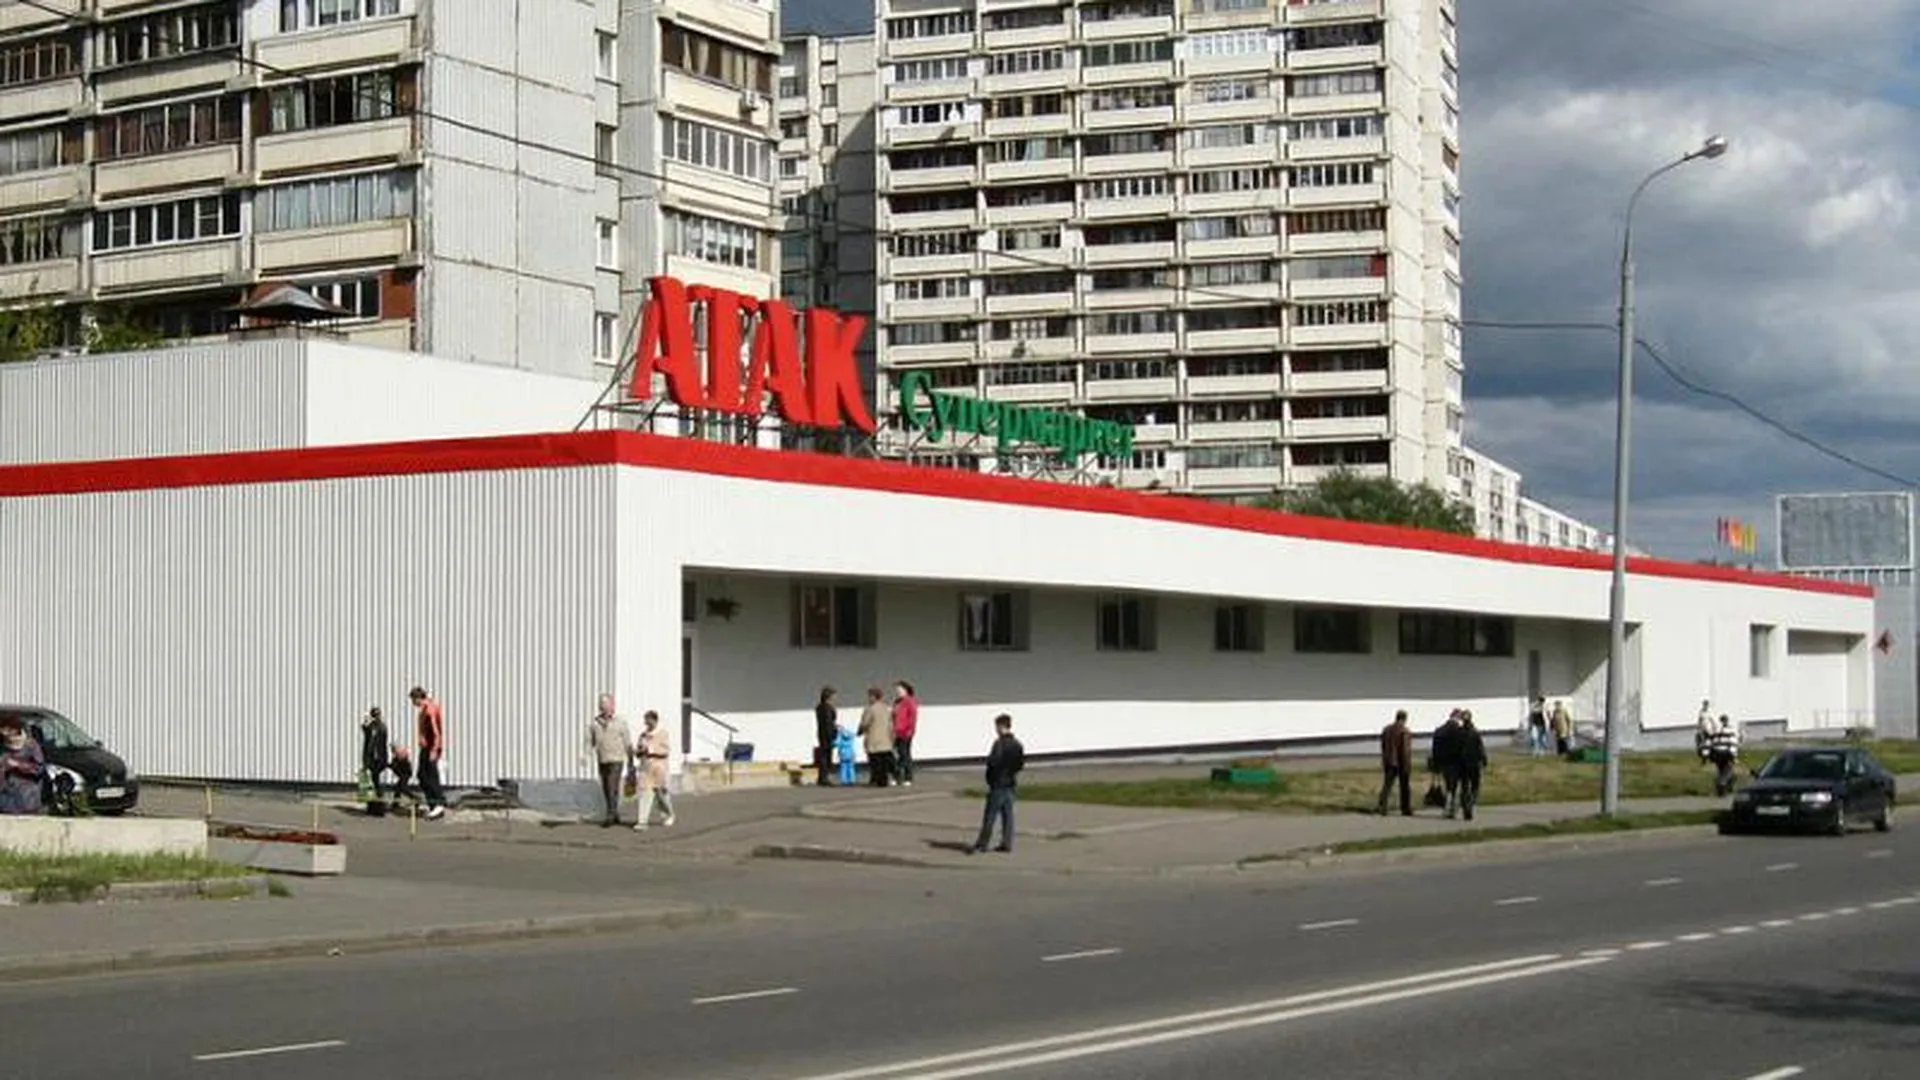 Супермаркет «АТАК» откроется в Зарайске осенью 2016 года